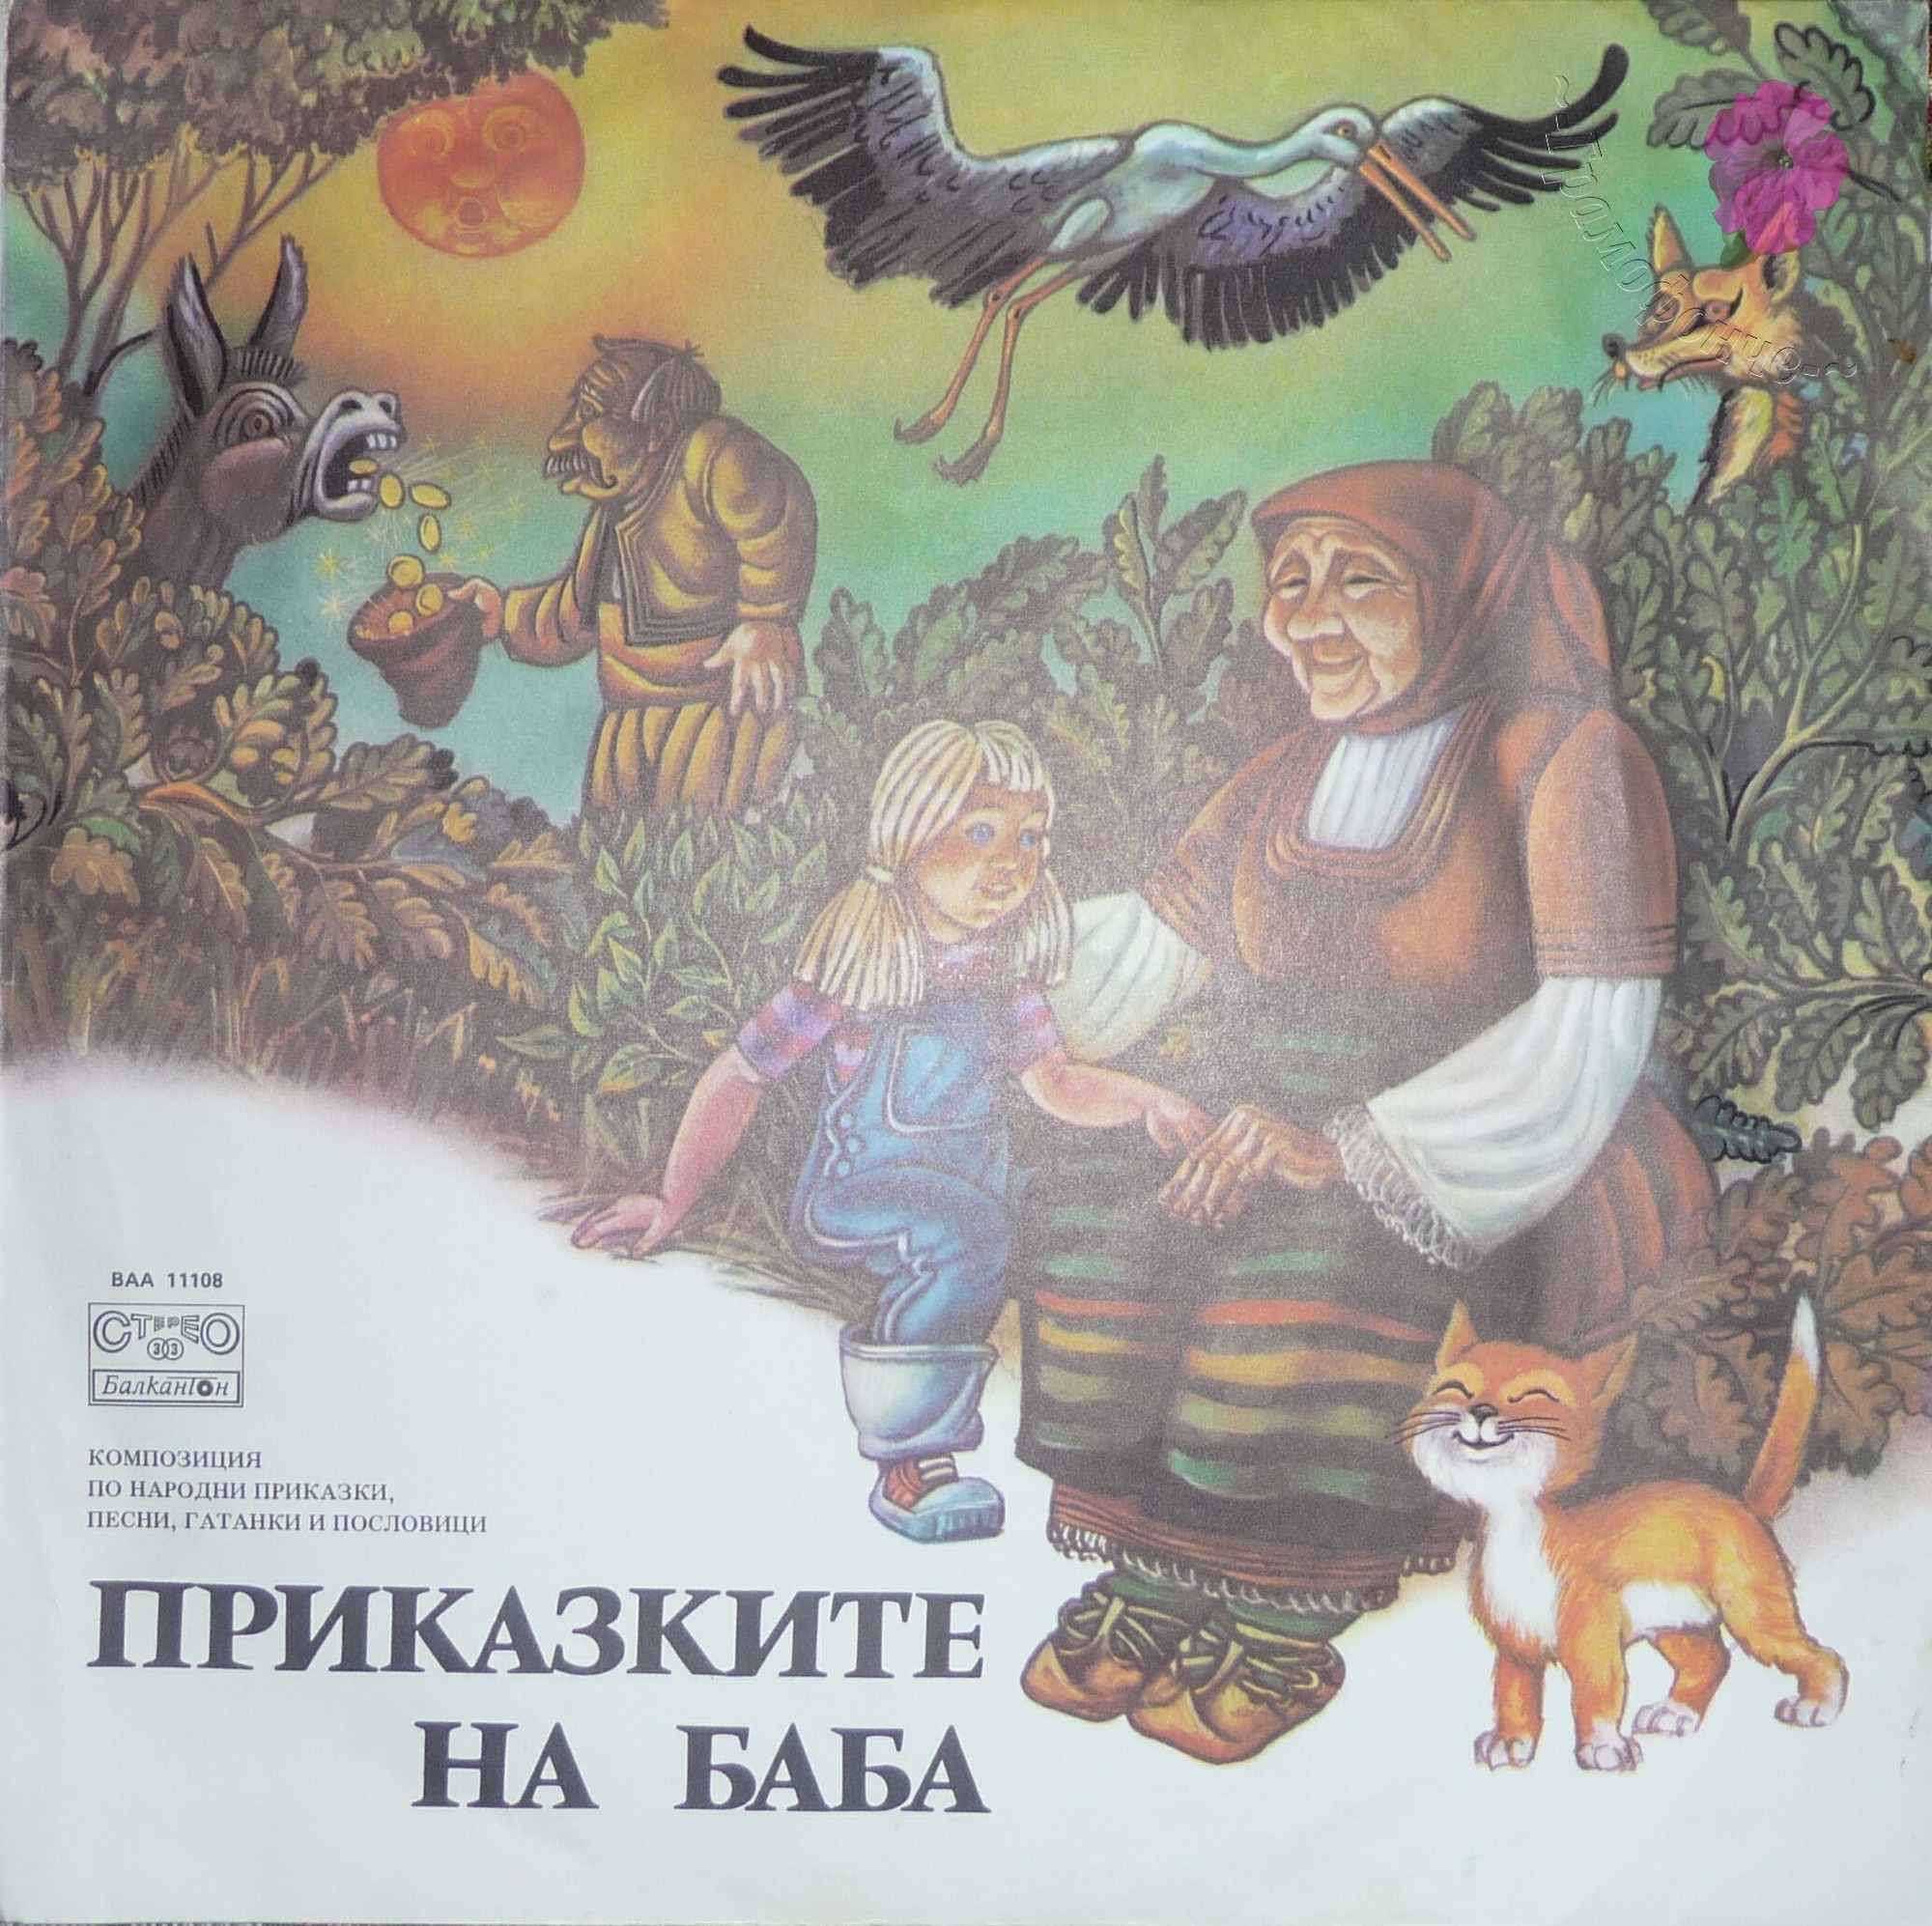 Приказките на баба, композиция по народни приказки, песни, гатанки и пословици